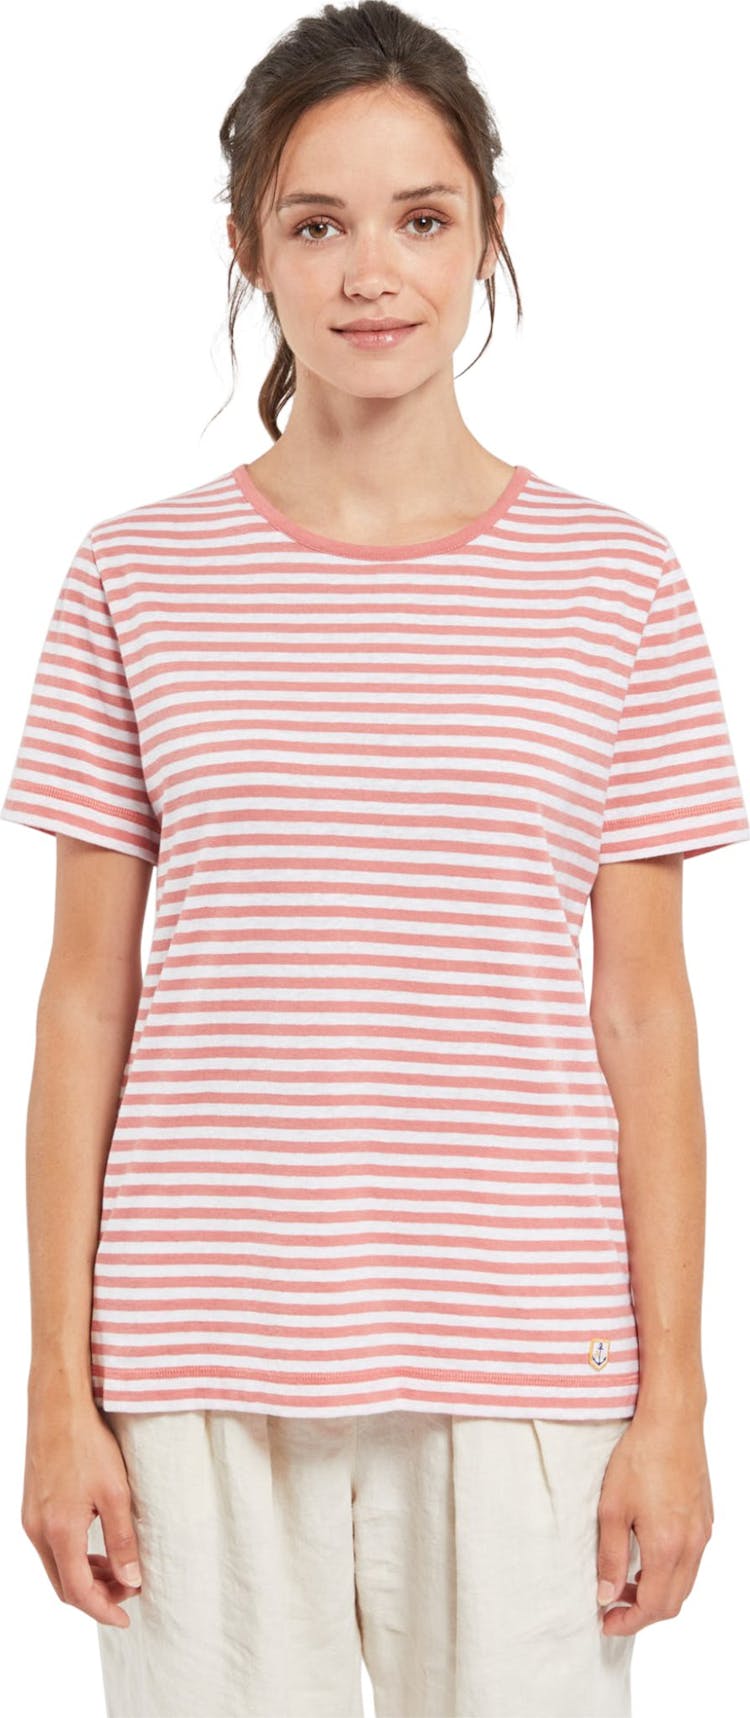 Numéro de l'image de la galerie de produits 1 pour le produit T-Shirt rayé en coton et lin - Femme